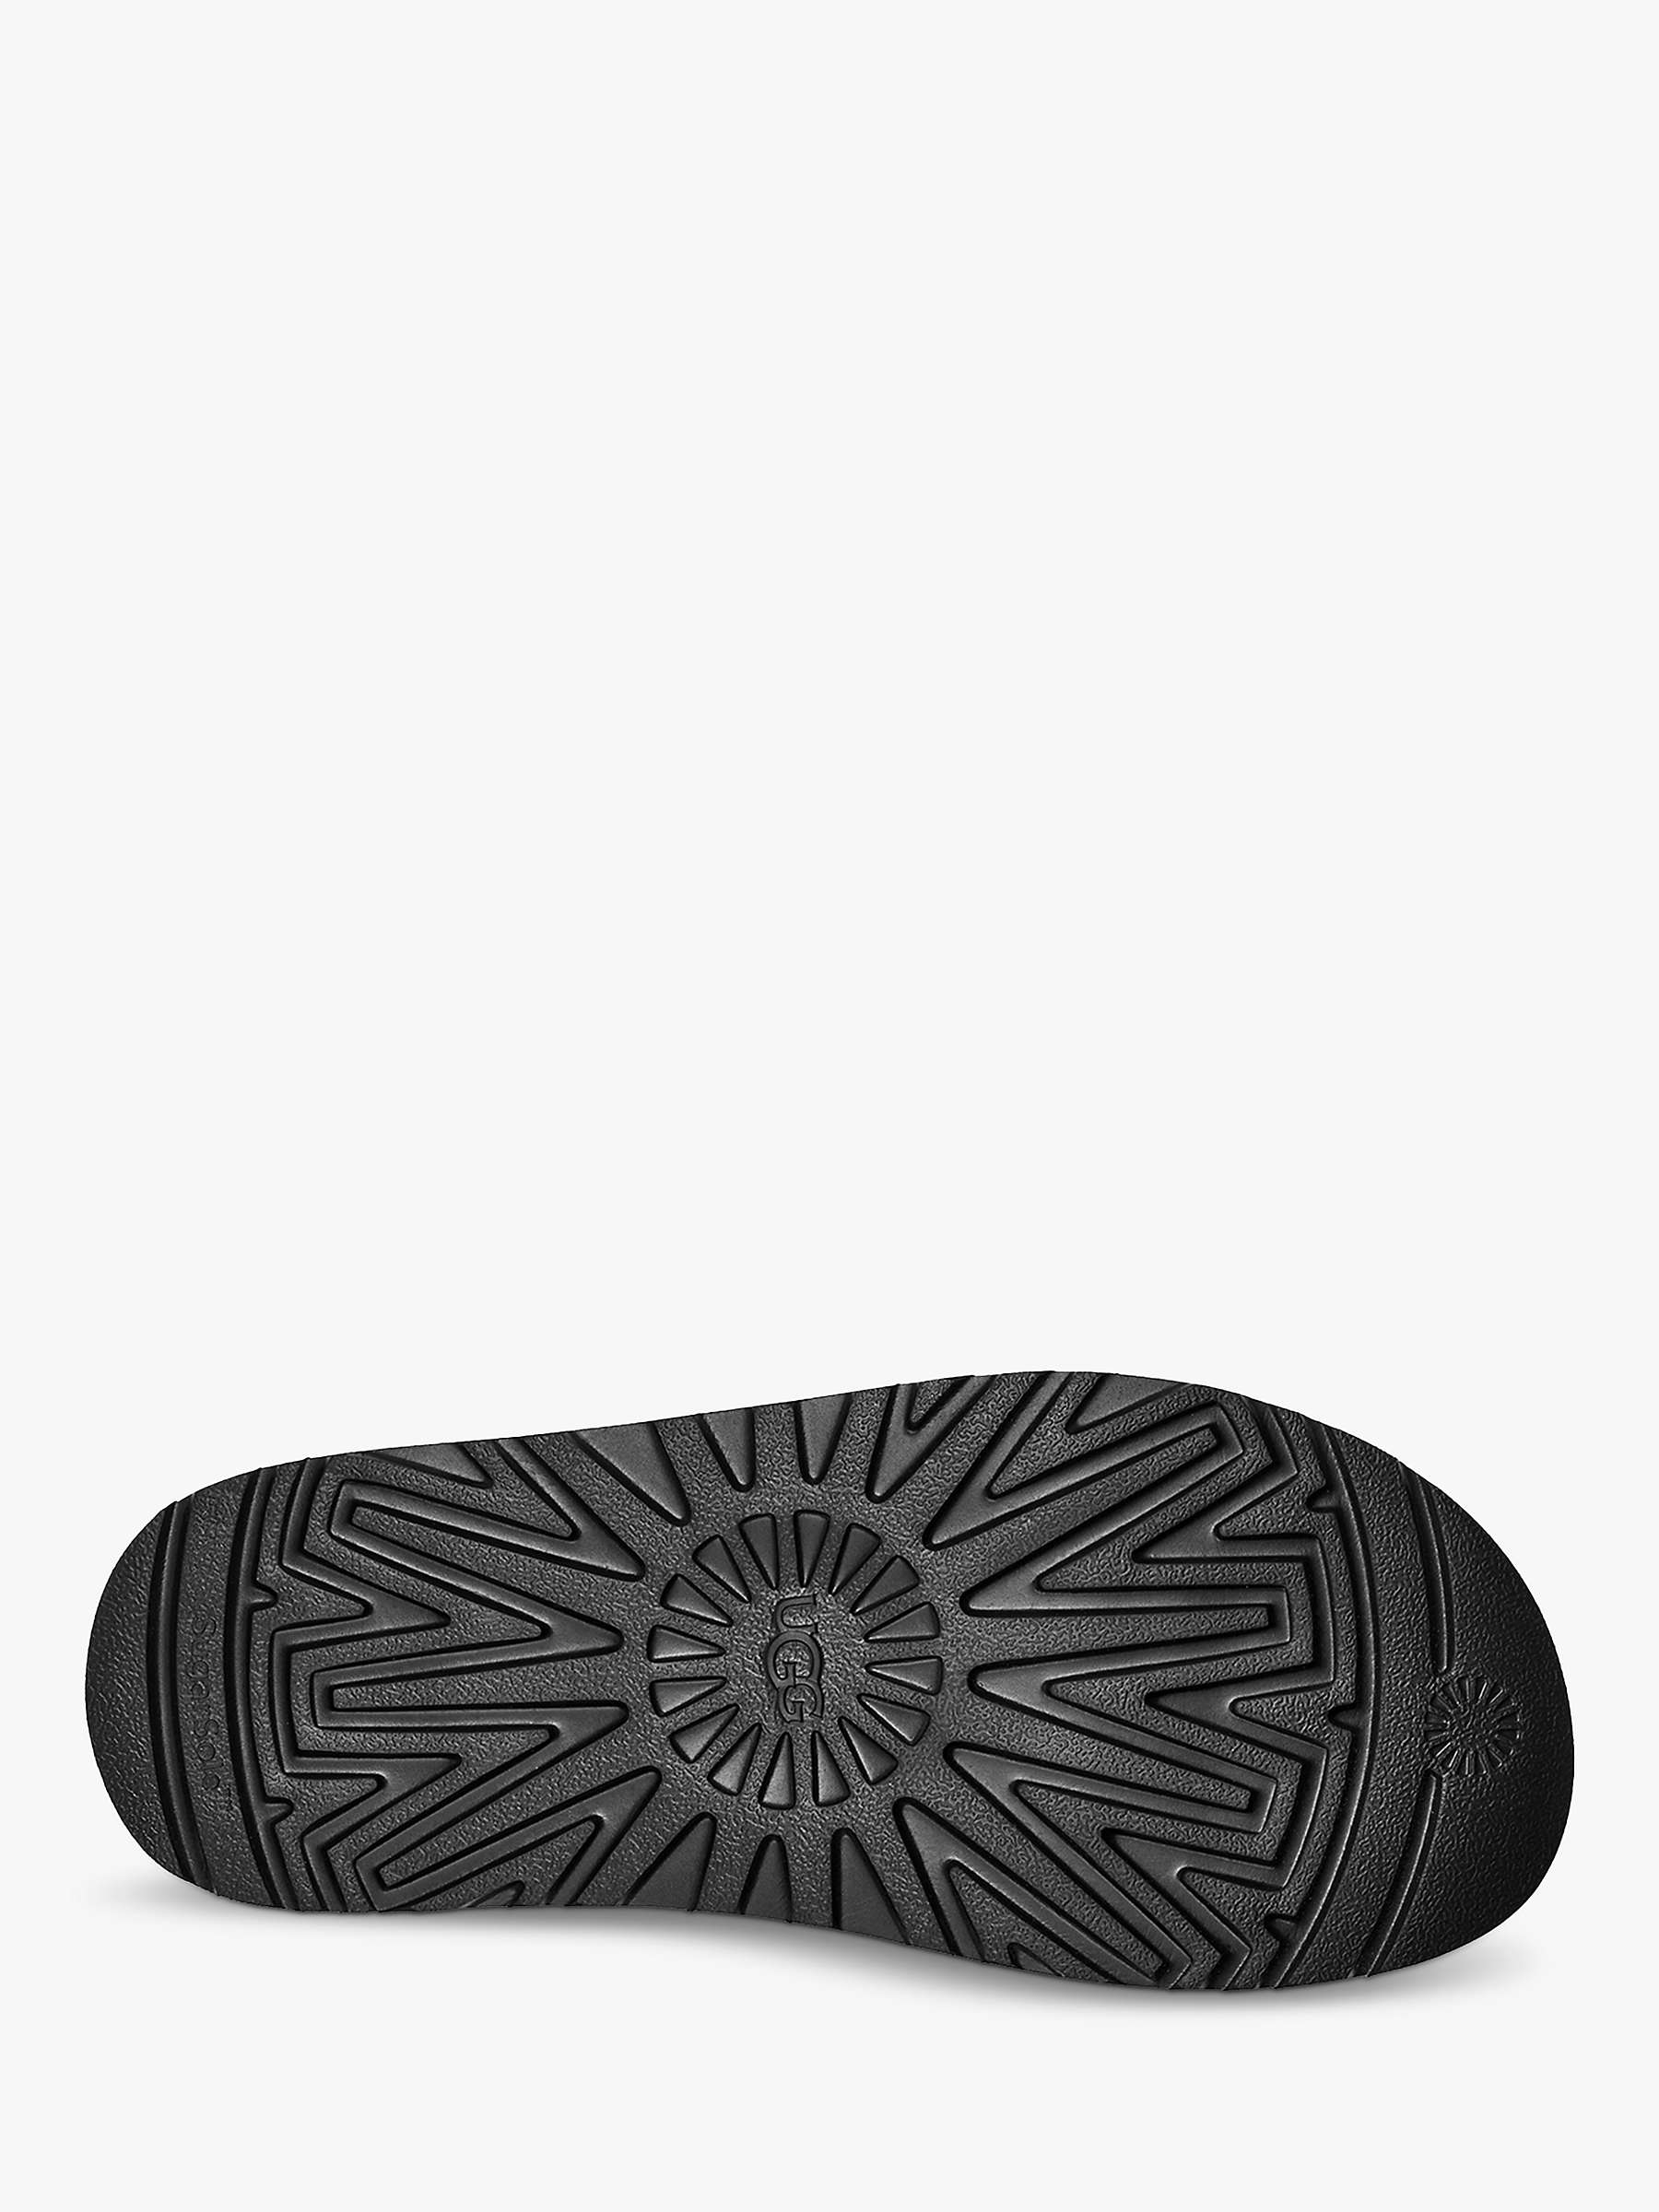 Buy UGG Goldenstar Suede Slider Sandals, Black Online at johnlewis.com